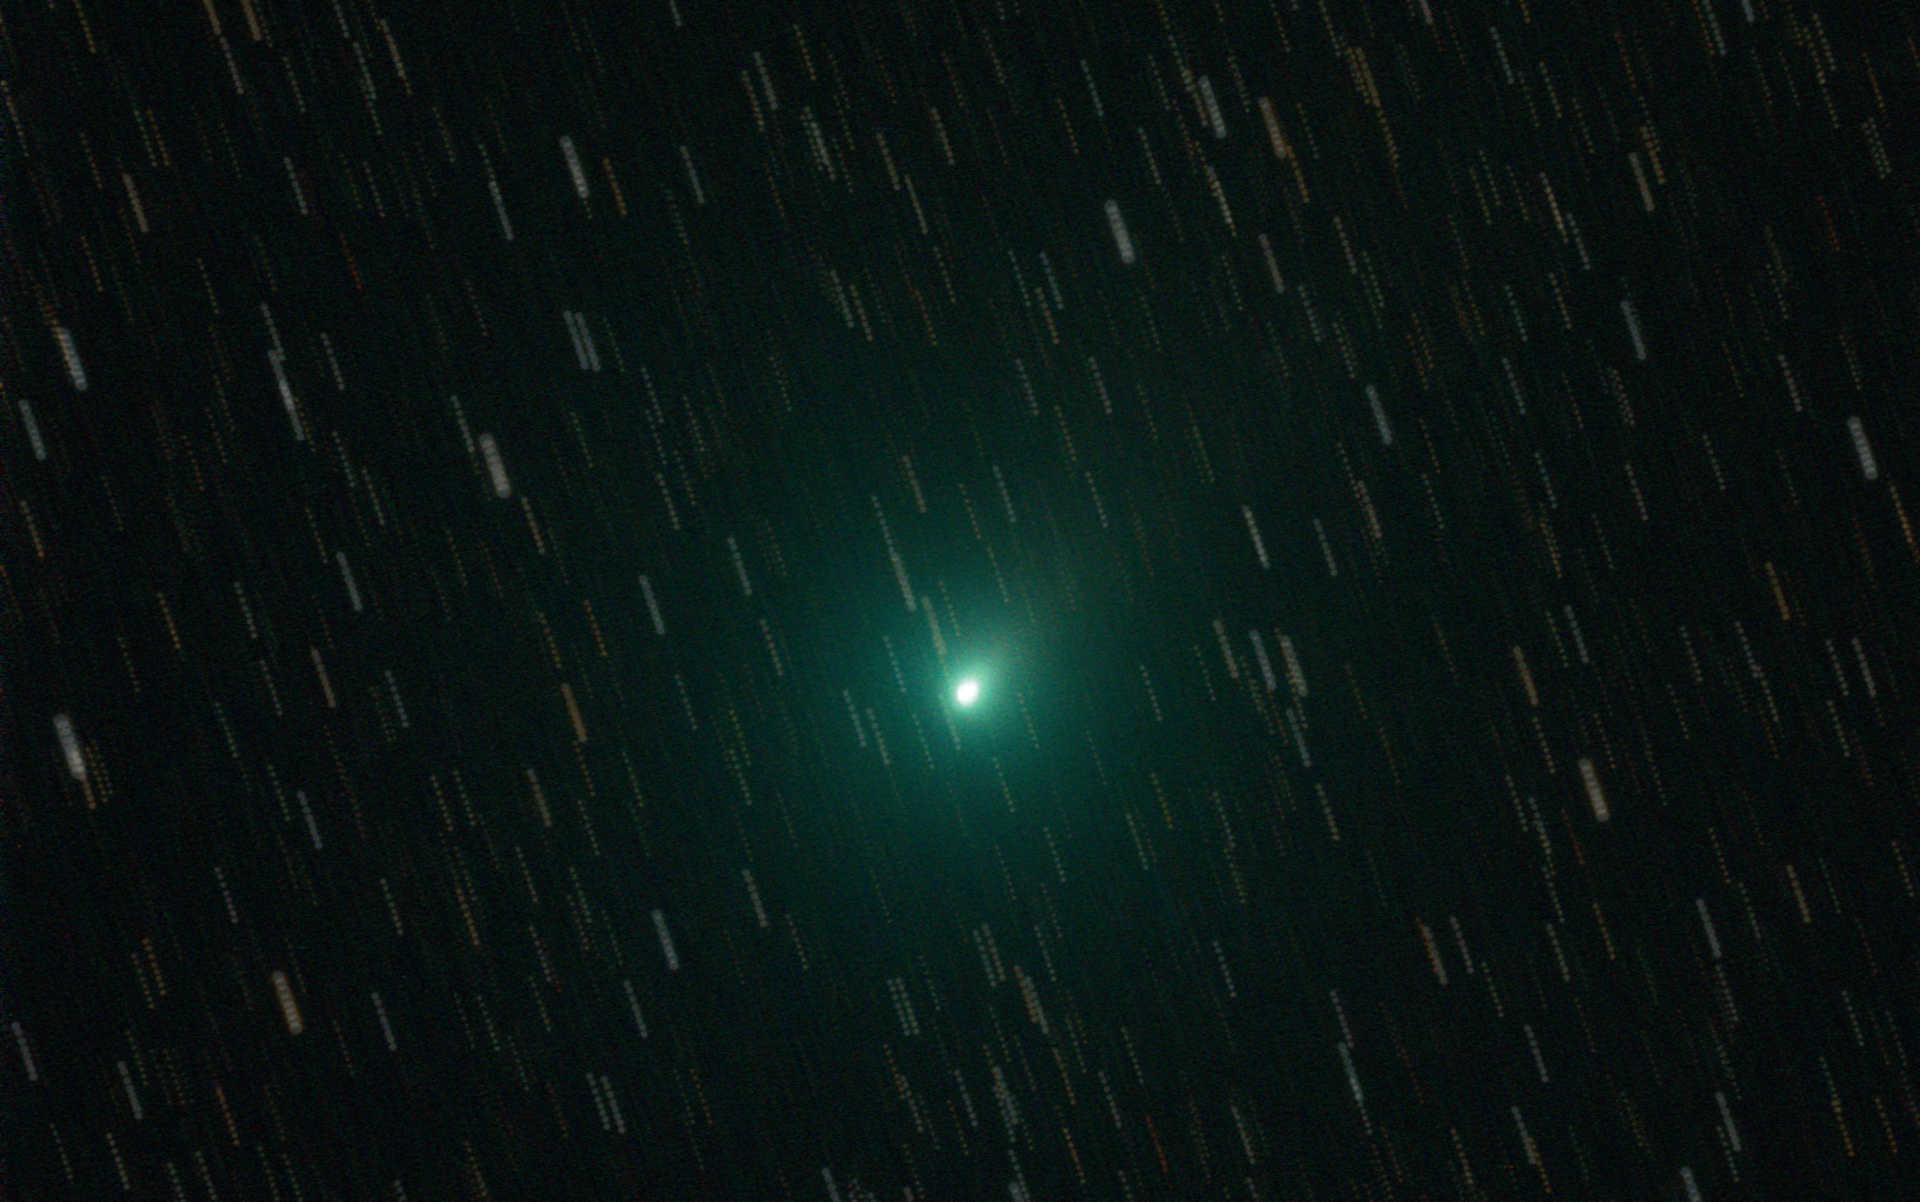 Sumaryczny obraz komety 103P (Hartley). Istnieją dwa rodzaje obróbki obrazu: albo poszczególne klatki centrujemy na komecie i na zdjęciu wynikowym gwiazdy są kreskami, przez co efektownie ukazana jest dynamika ruchu komety na tle nocnego nieba...